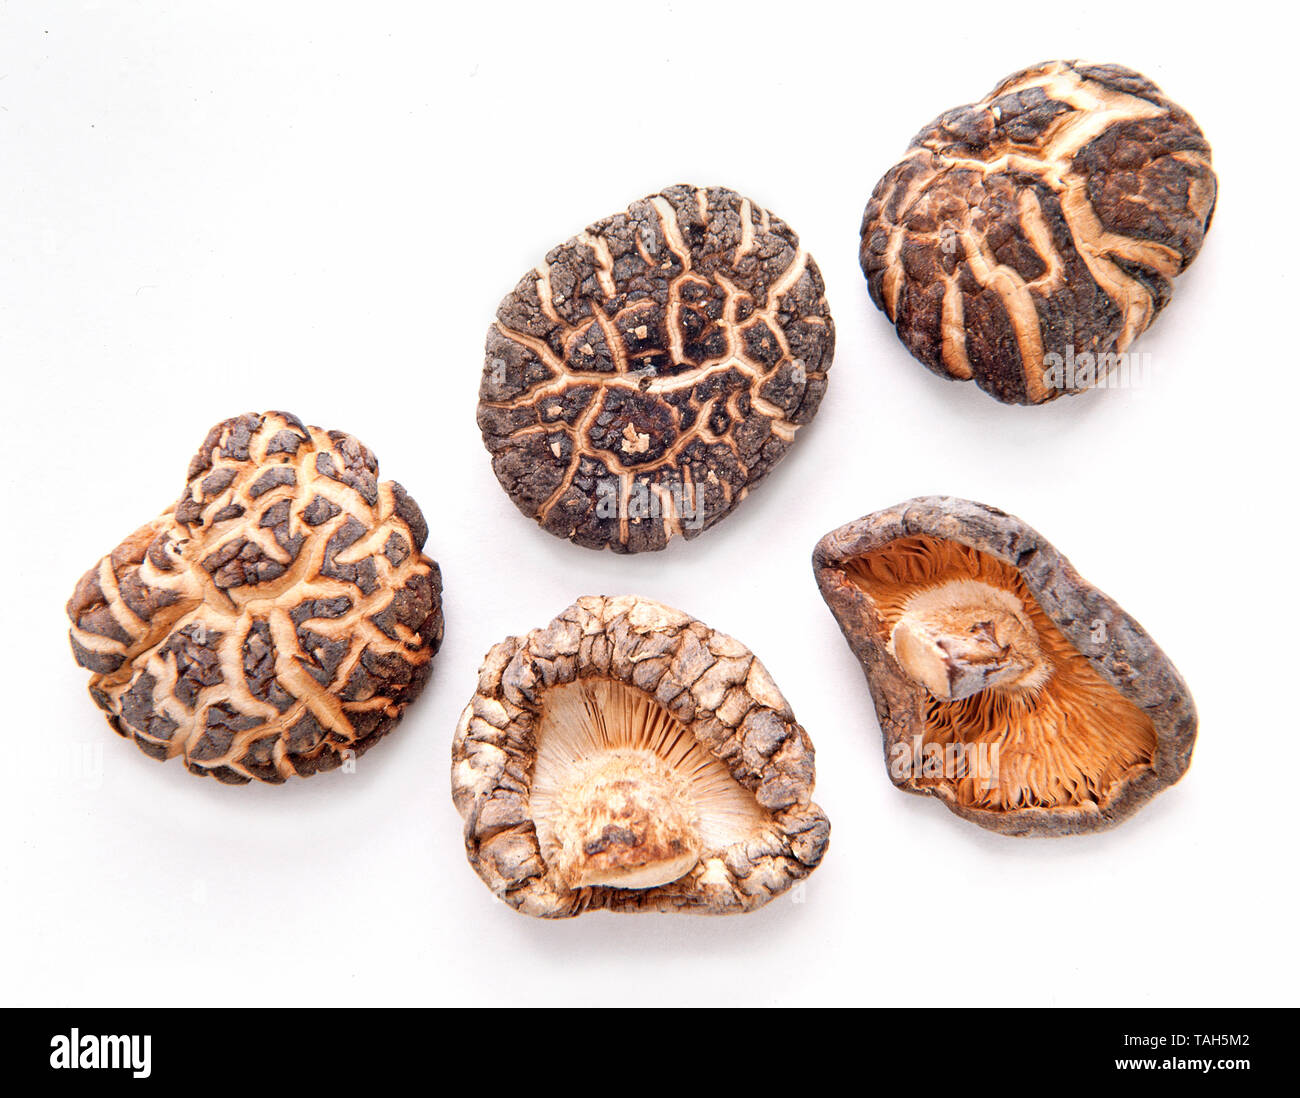 Dried Chinese shiitake mushrooms Stock Photo